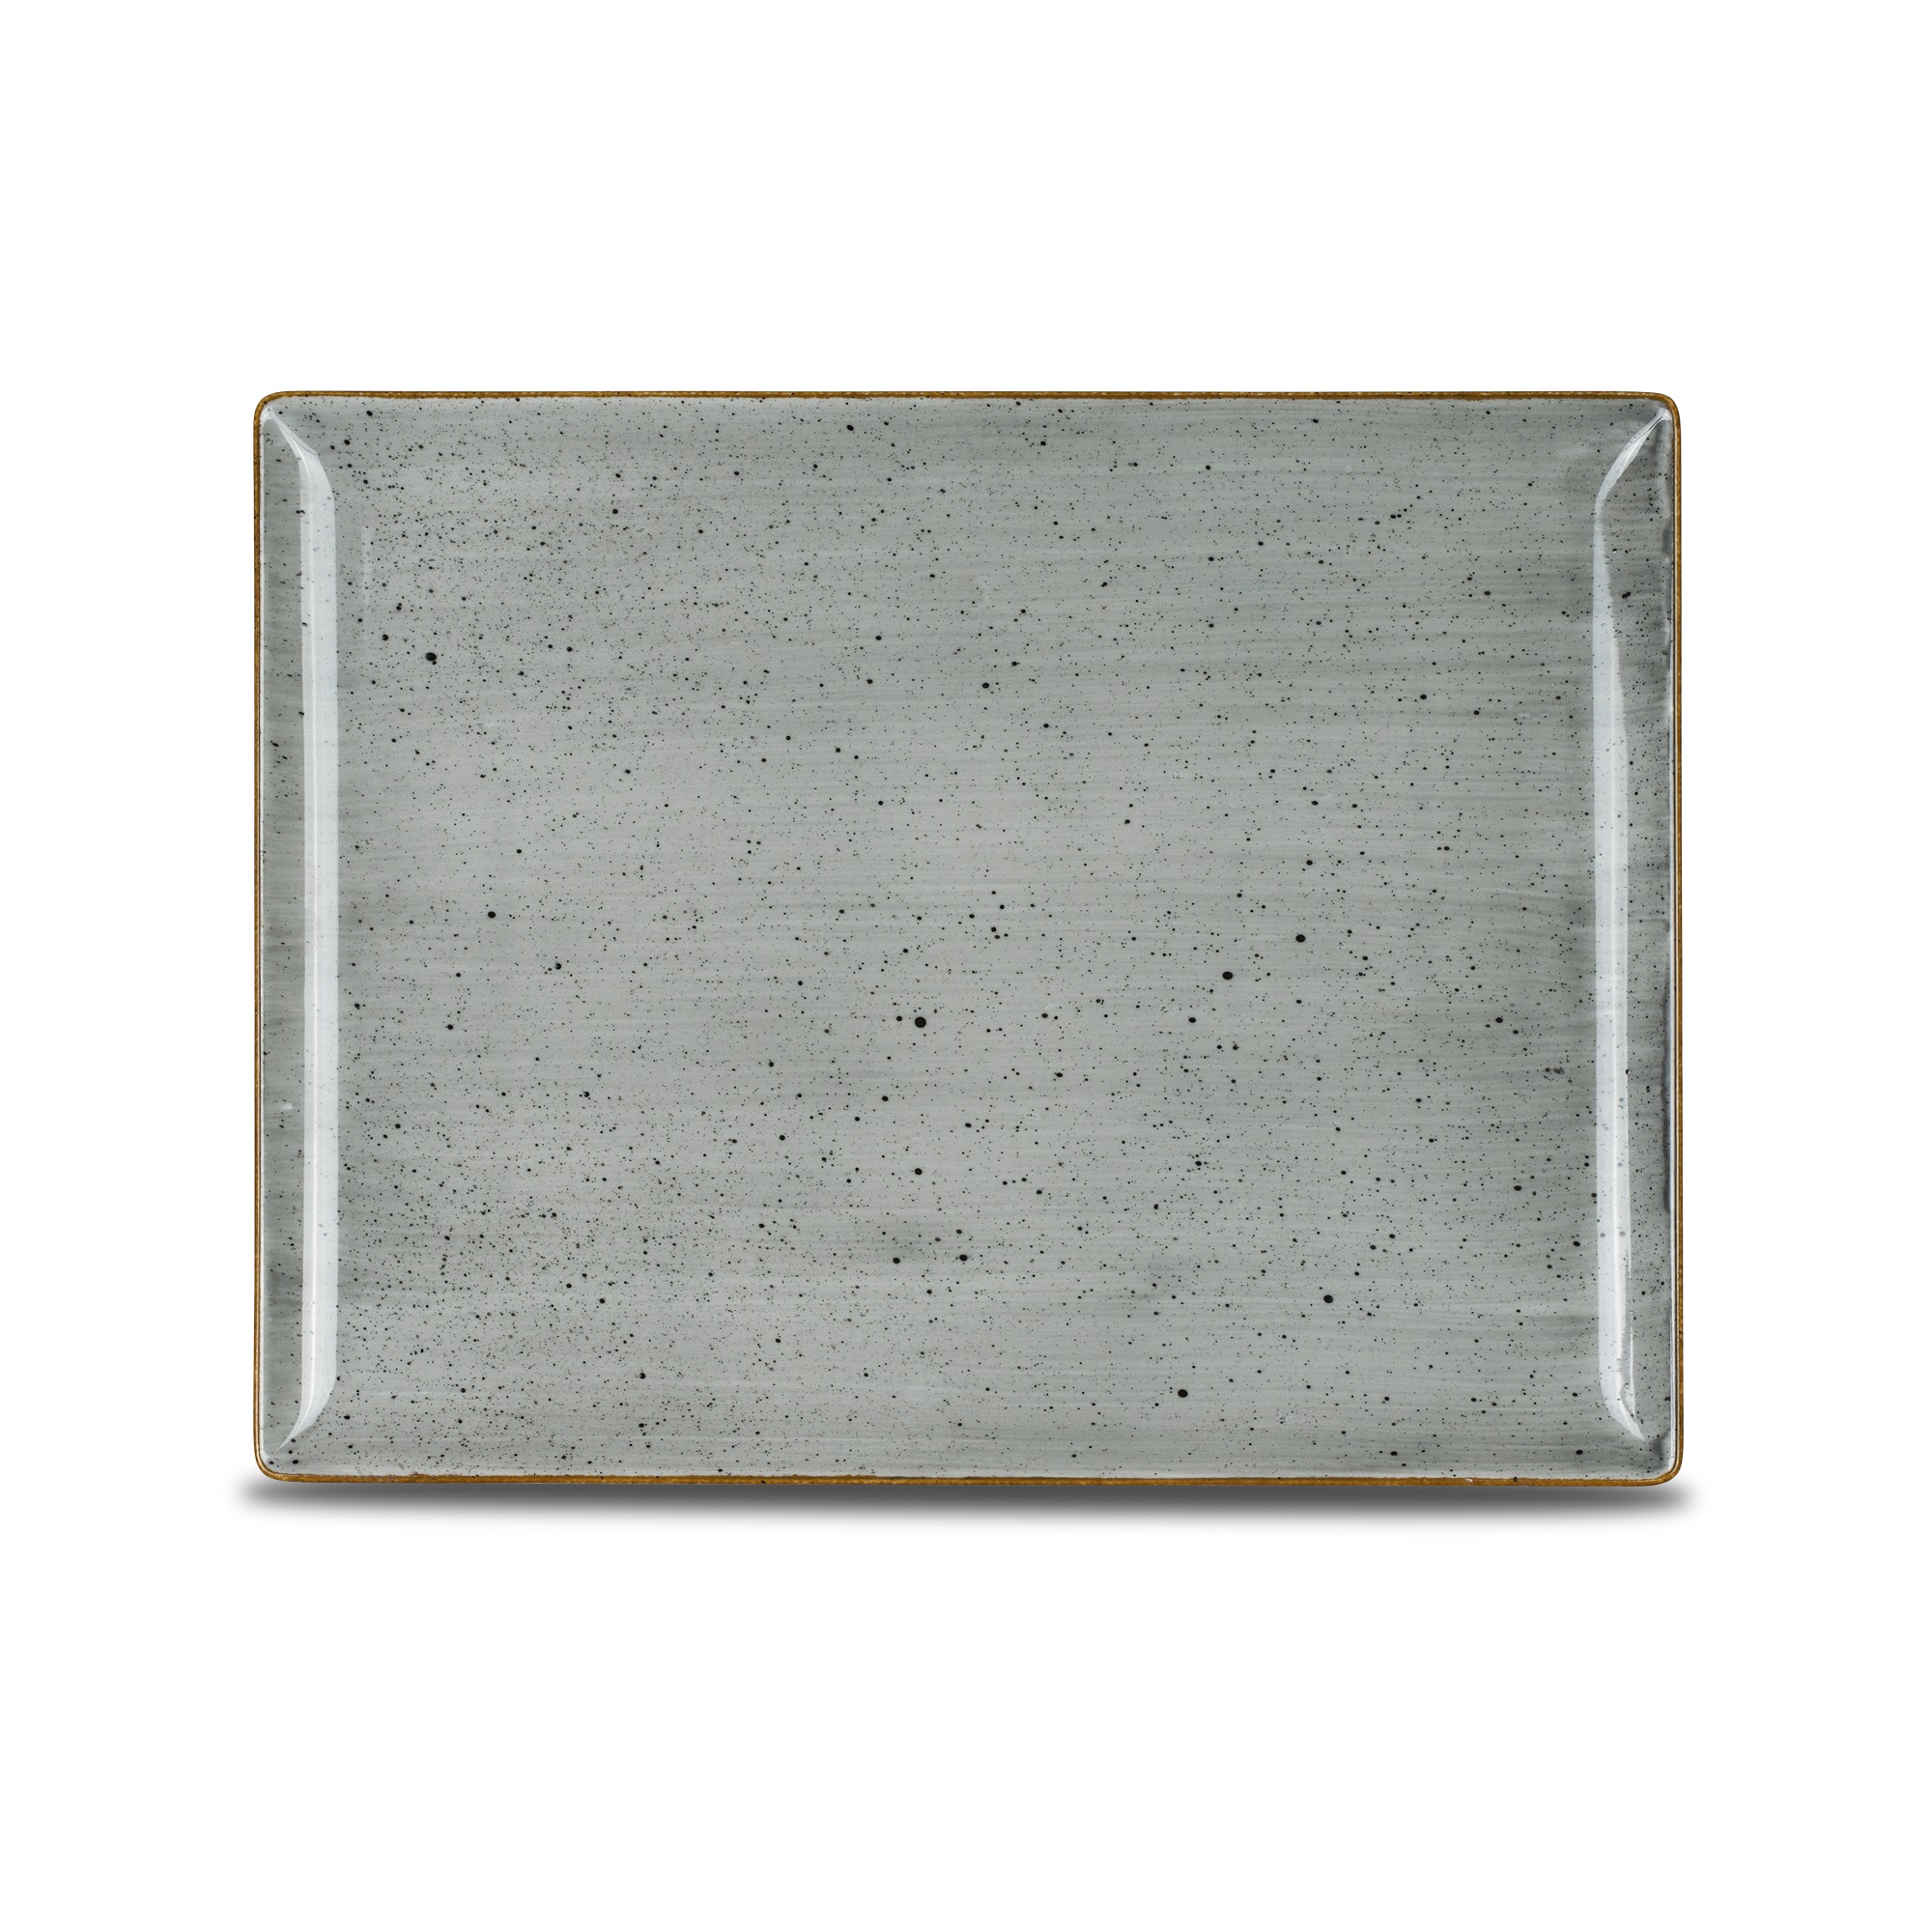 Platte eckig 31x24cm CLASSIC dusty grey